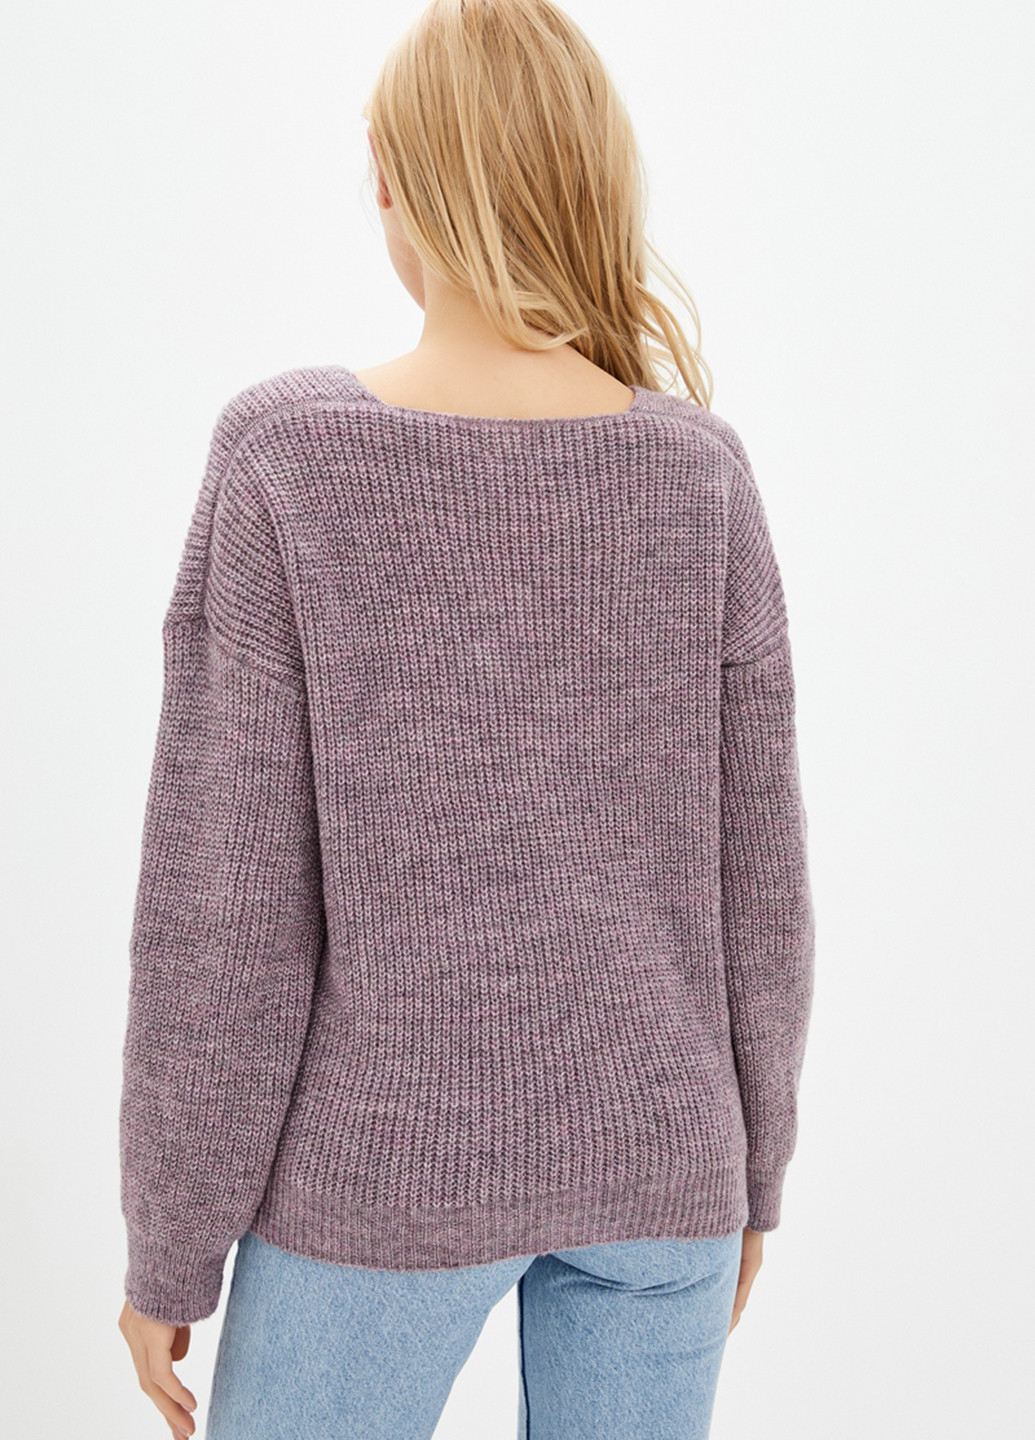 Лиловый демисезонный пуловер пуловер Sewel